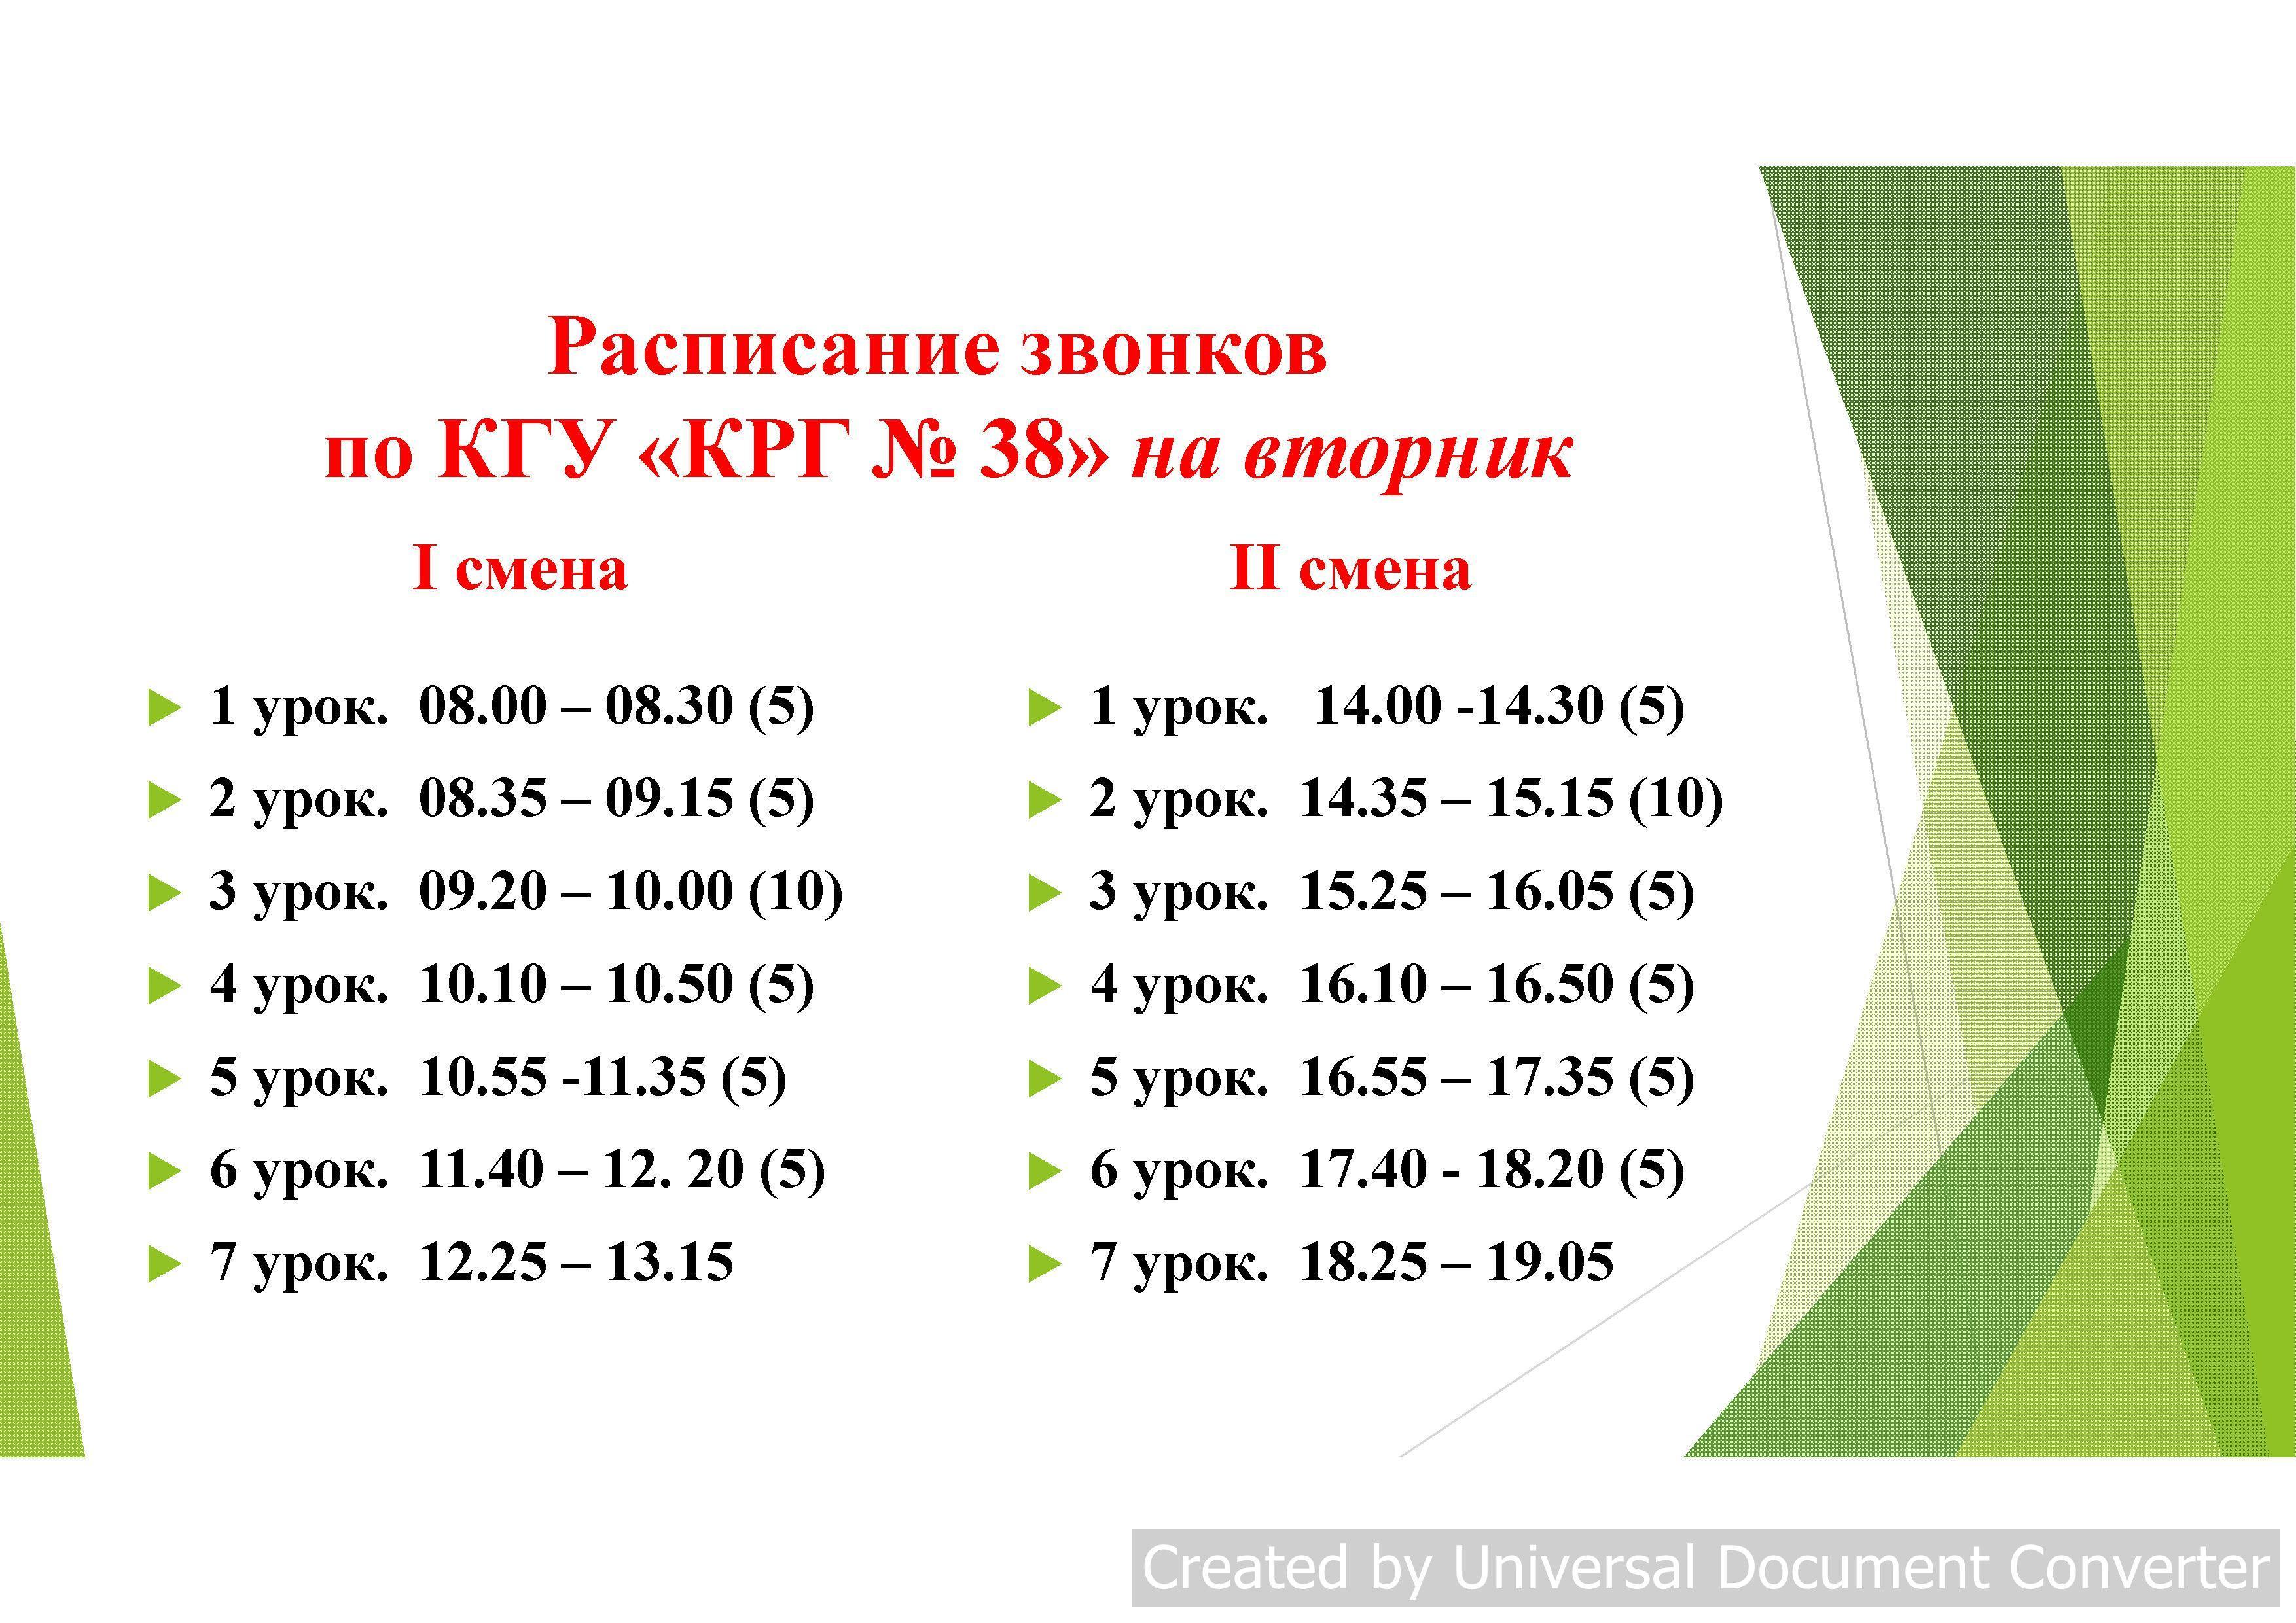 Сабақ кестесі 2018-19 schedule of lessons  2018-19